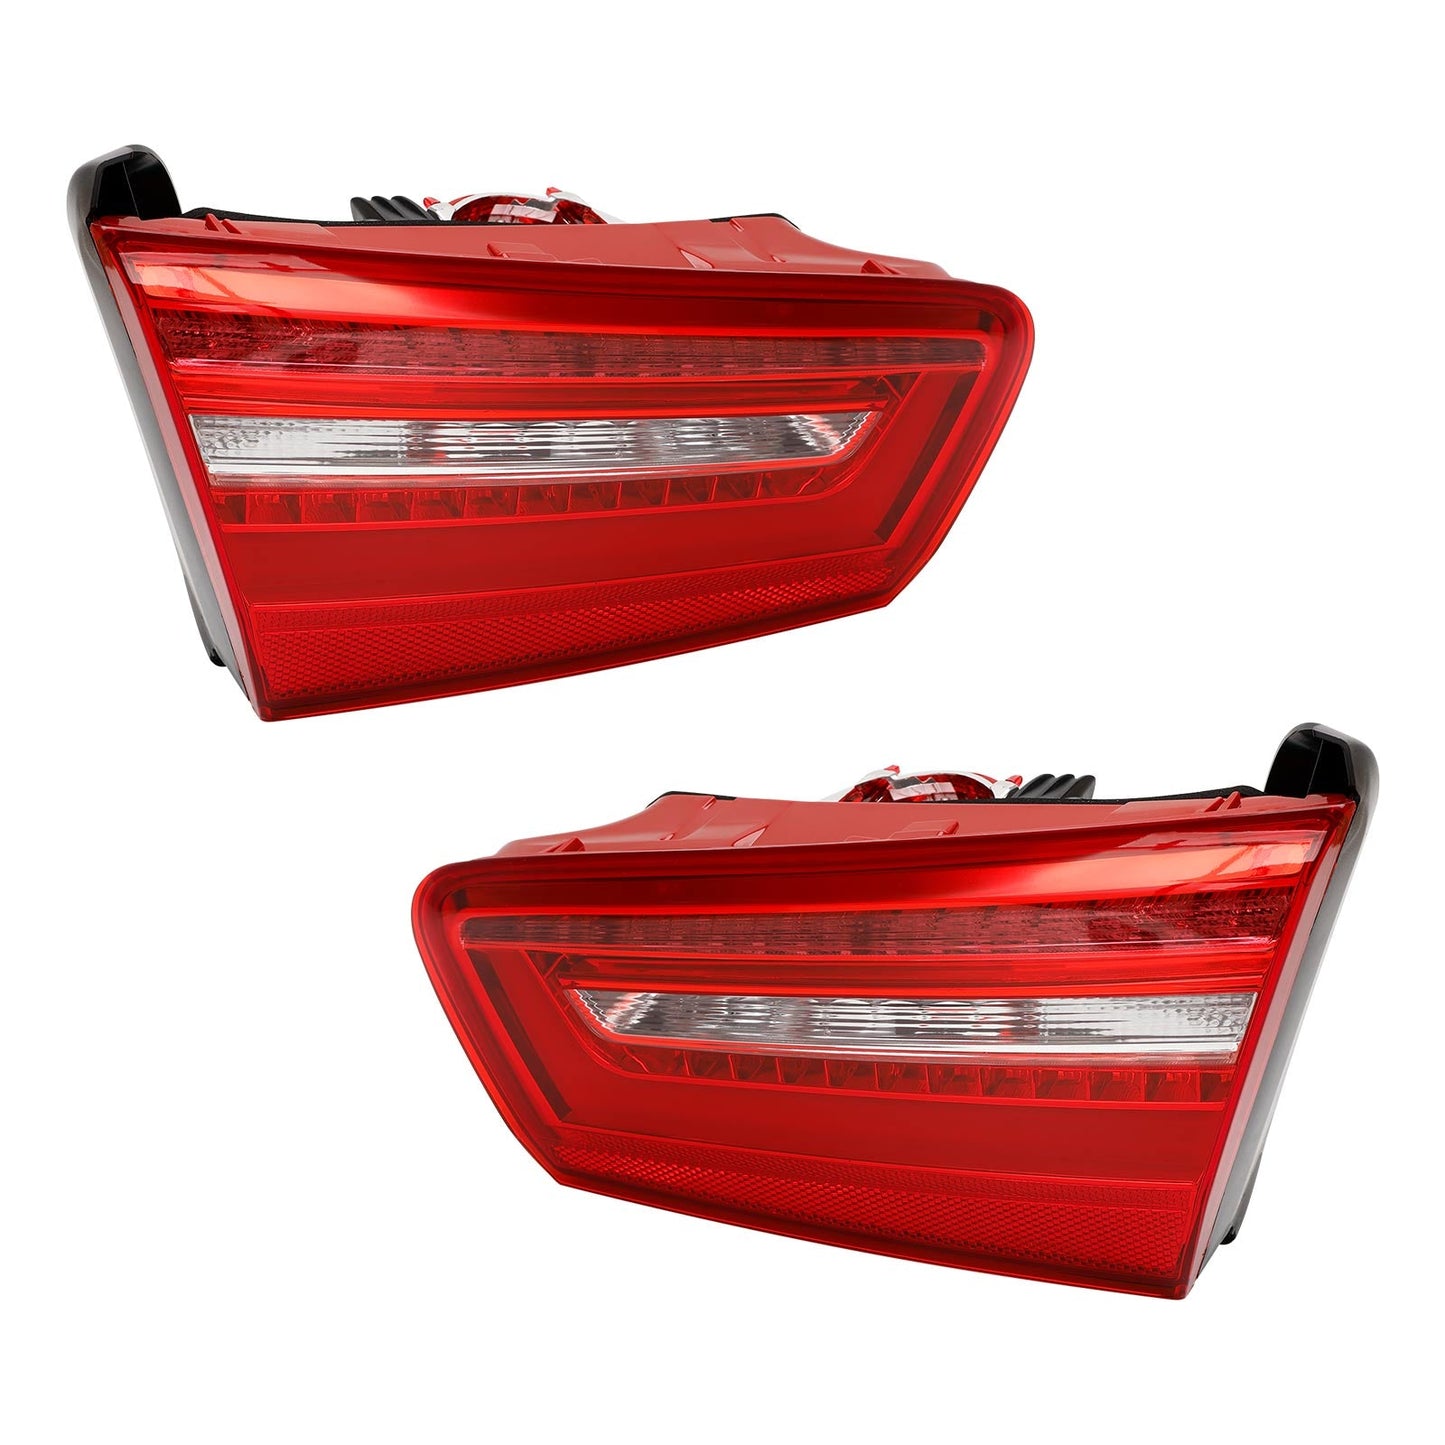 2012-2015 AUDI A6 C7 Left+Right Inner Trunk LED Tail Light Lamp